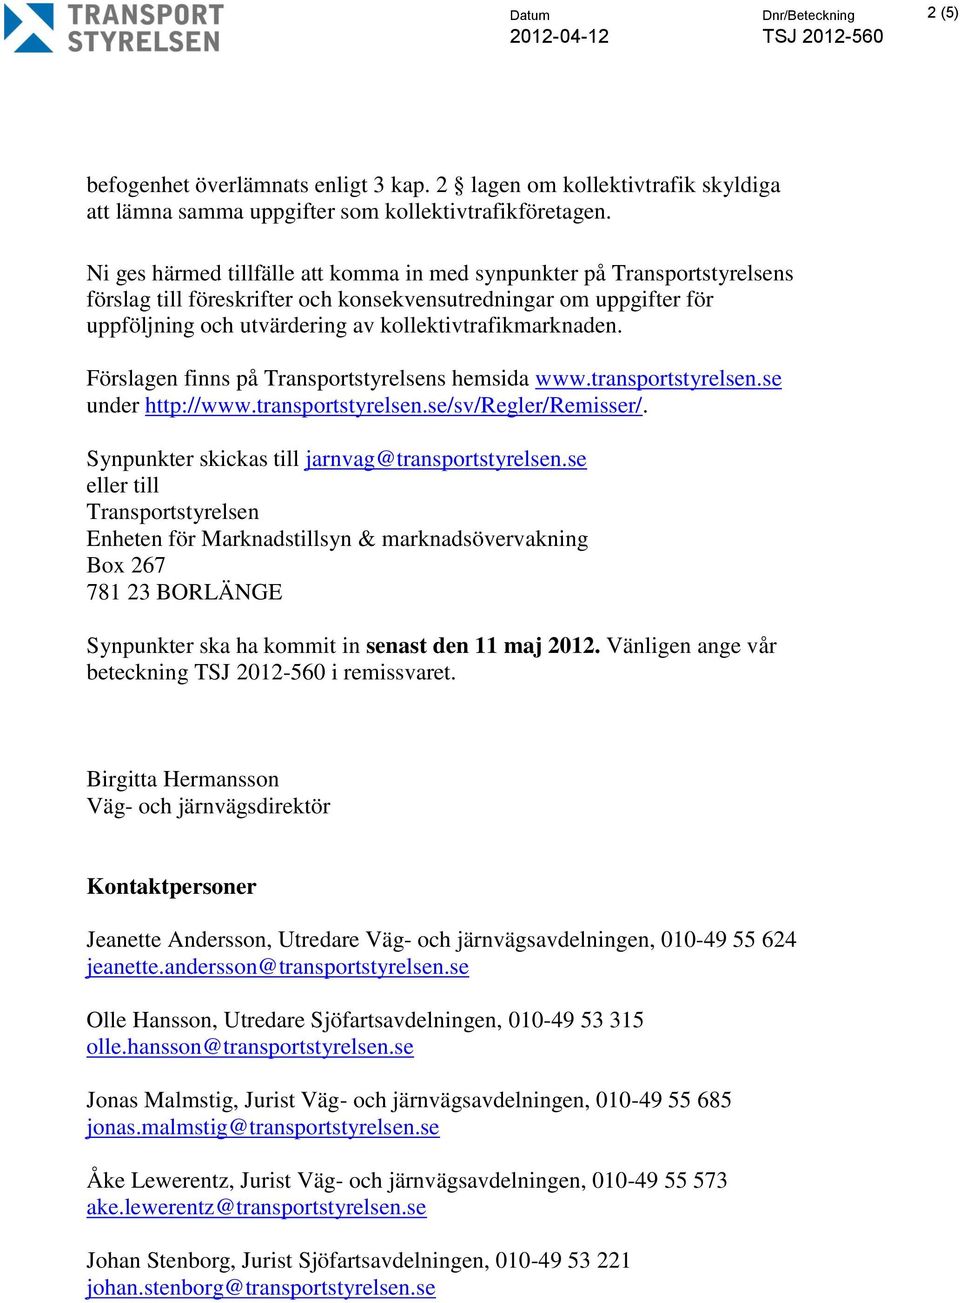 Förslagen finns på Transportstyrelsens hemsida www.transportstyrelsen.se under http://www.transportstyrelsen.se/sv/regler/remisser/. Synpunkter skickas till jarnvag@transportstyrelsen.